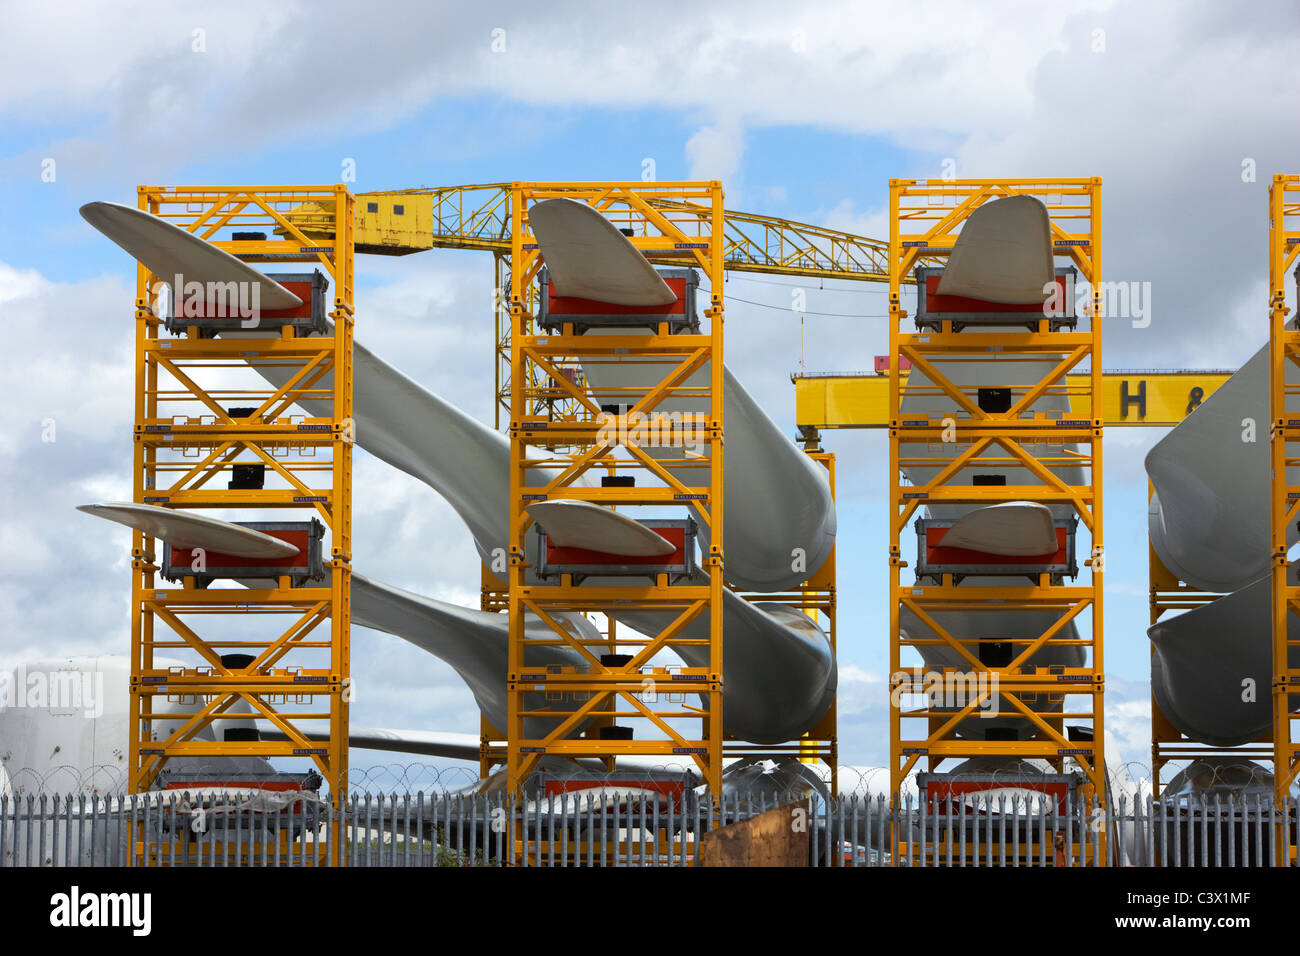 Lames pour la construction des éoliennes au chantier naval Harland and Wolff à Belfast en Irlande du Nord Banque D'Images